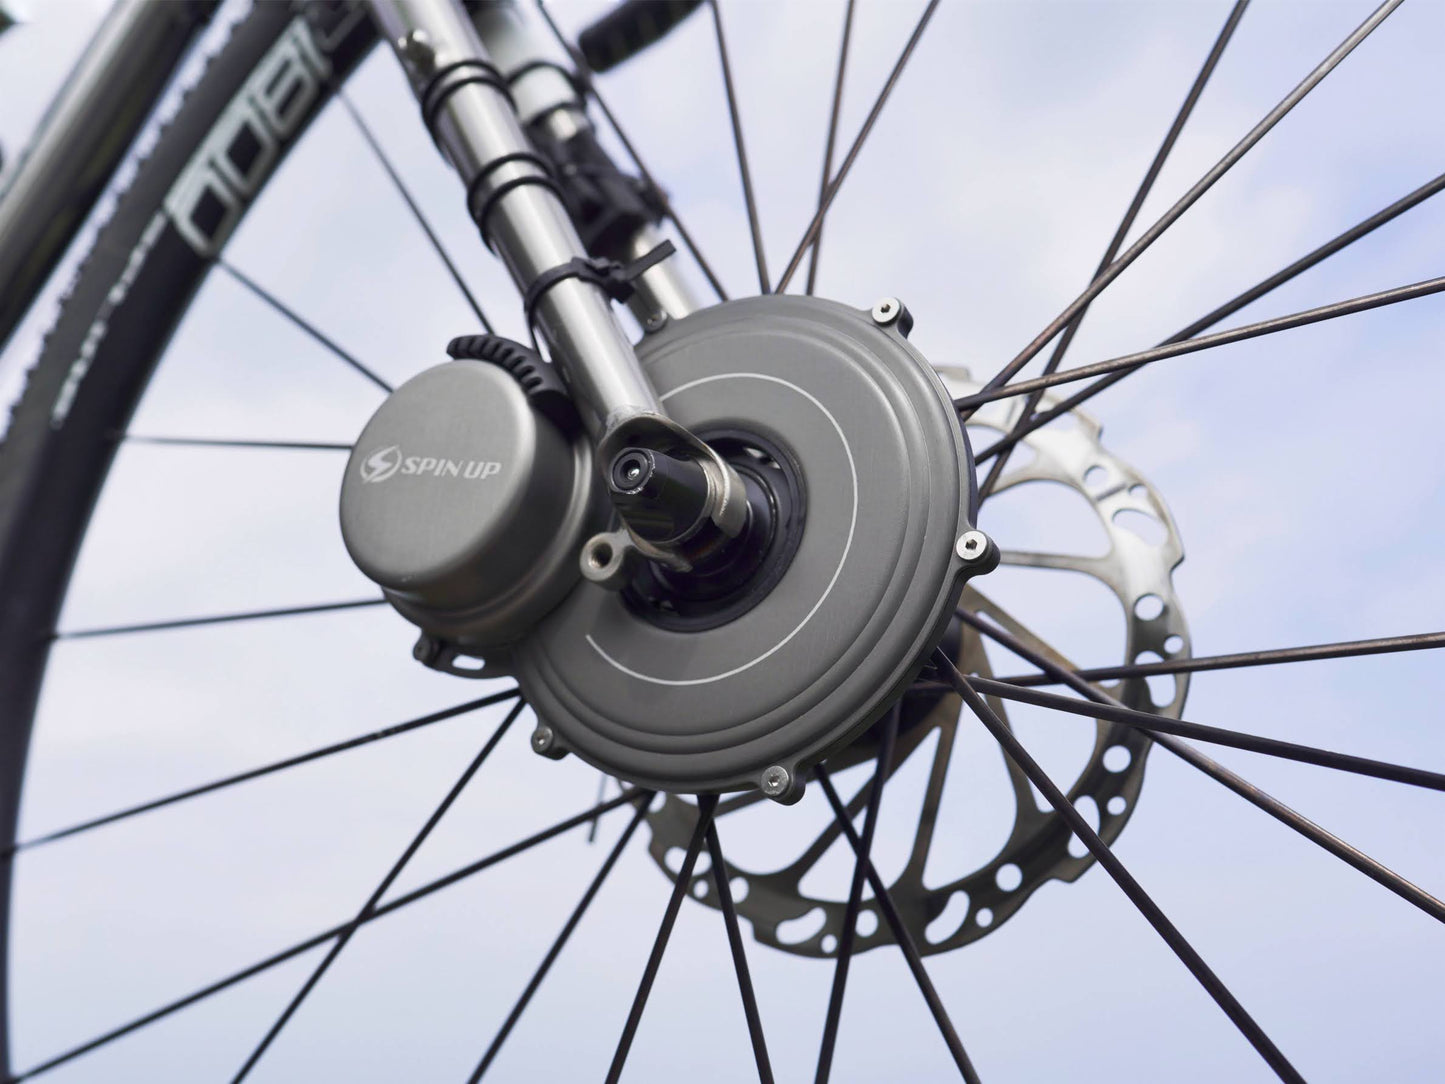 Spin Up Tour Cycling Generator F12W-Pro | Vorderradbefestigung an der Gabel | Leichtes, kompaktes Design | Weltweit Versandkostenfrei